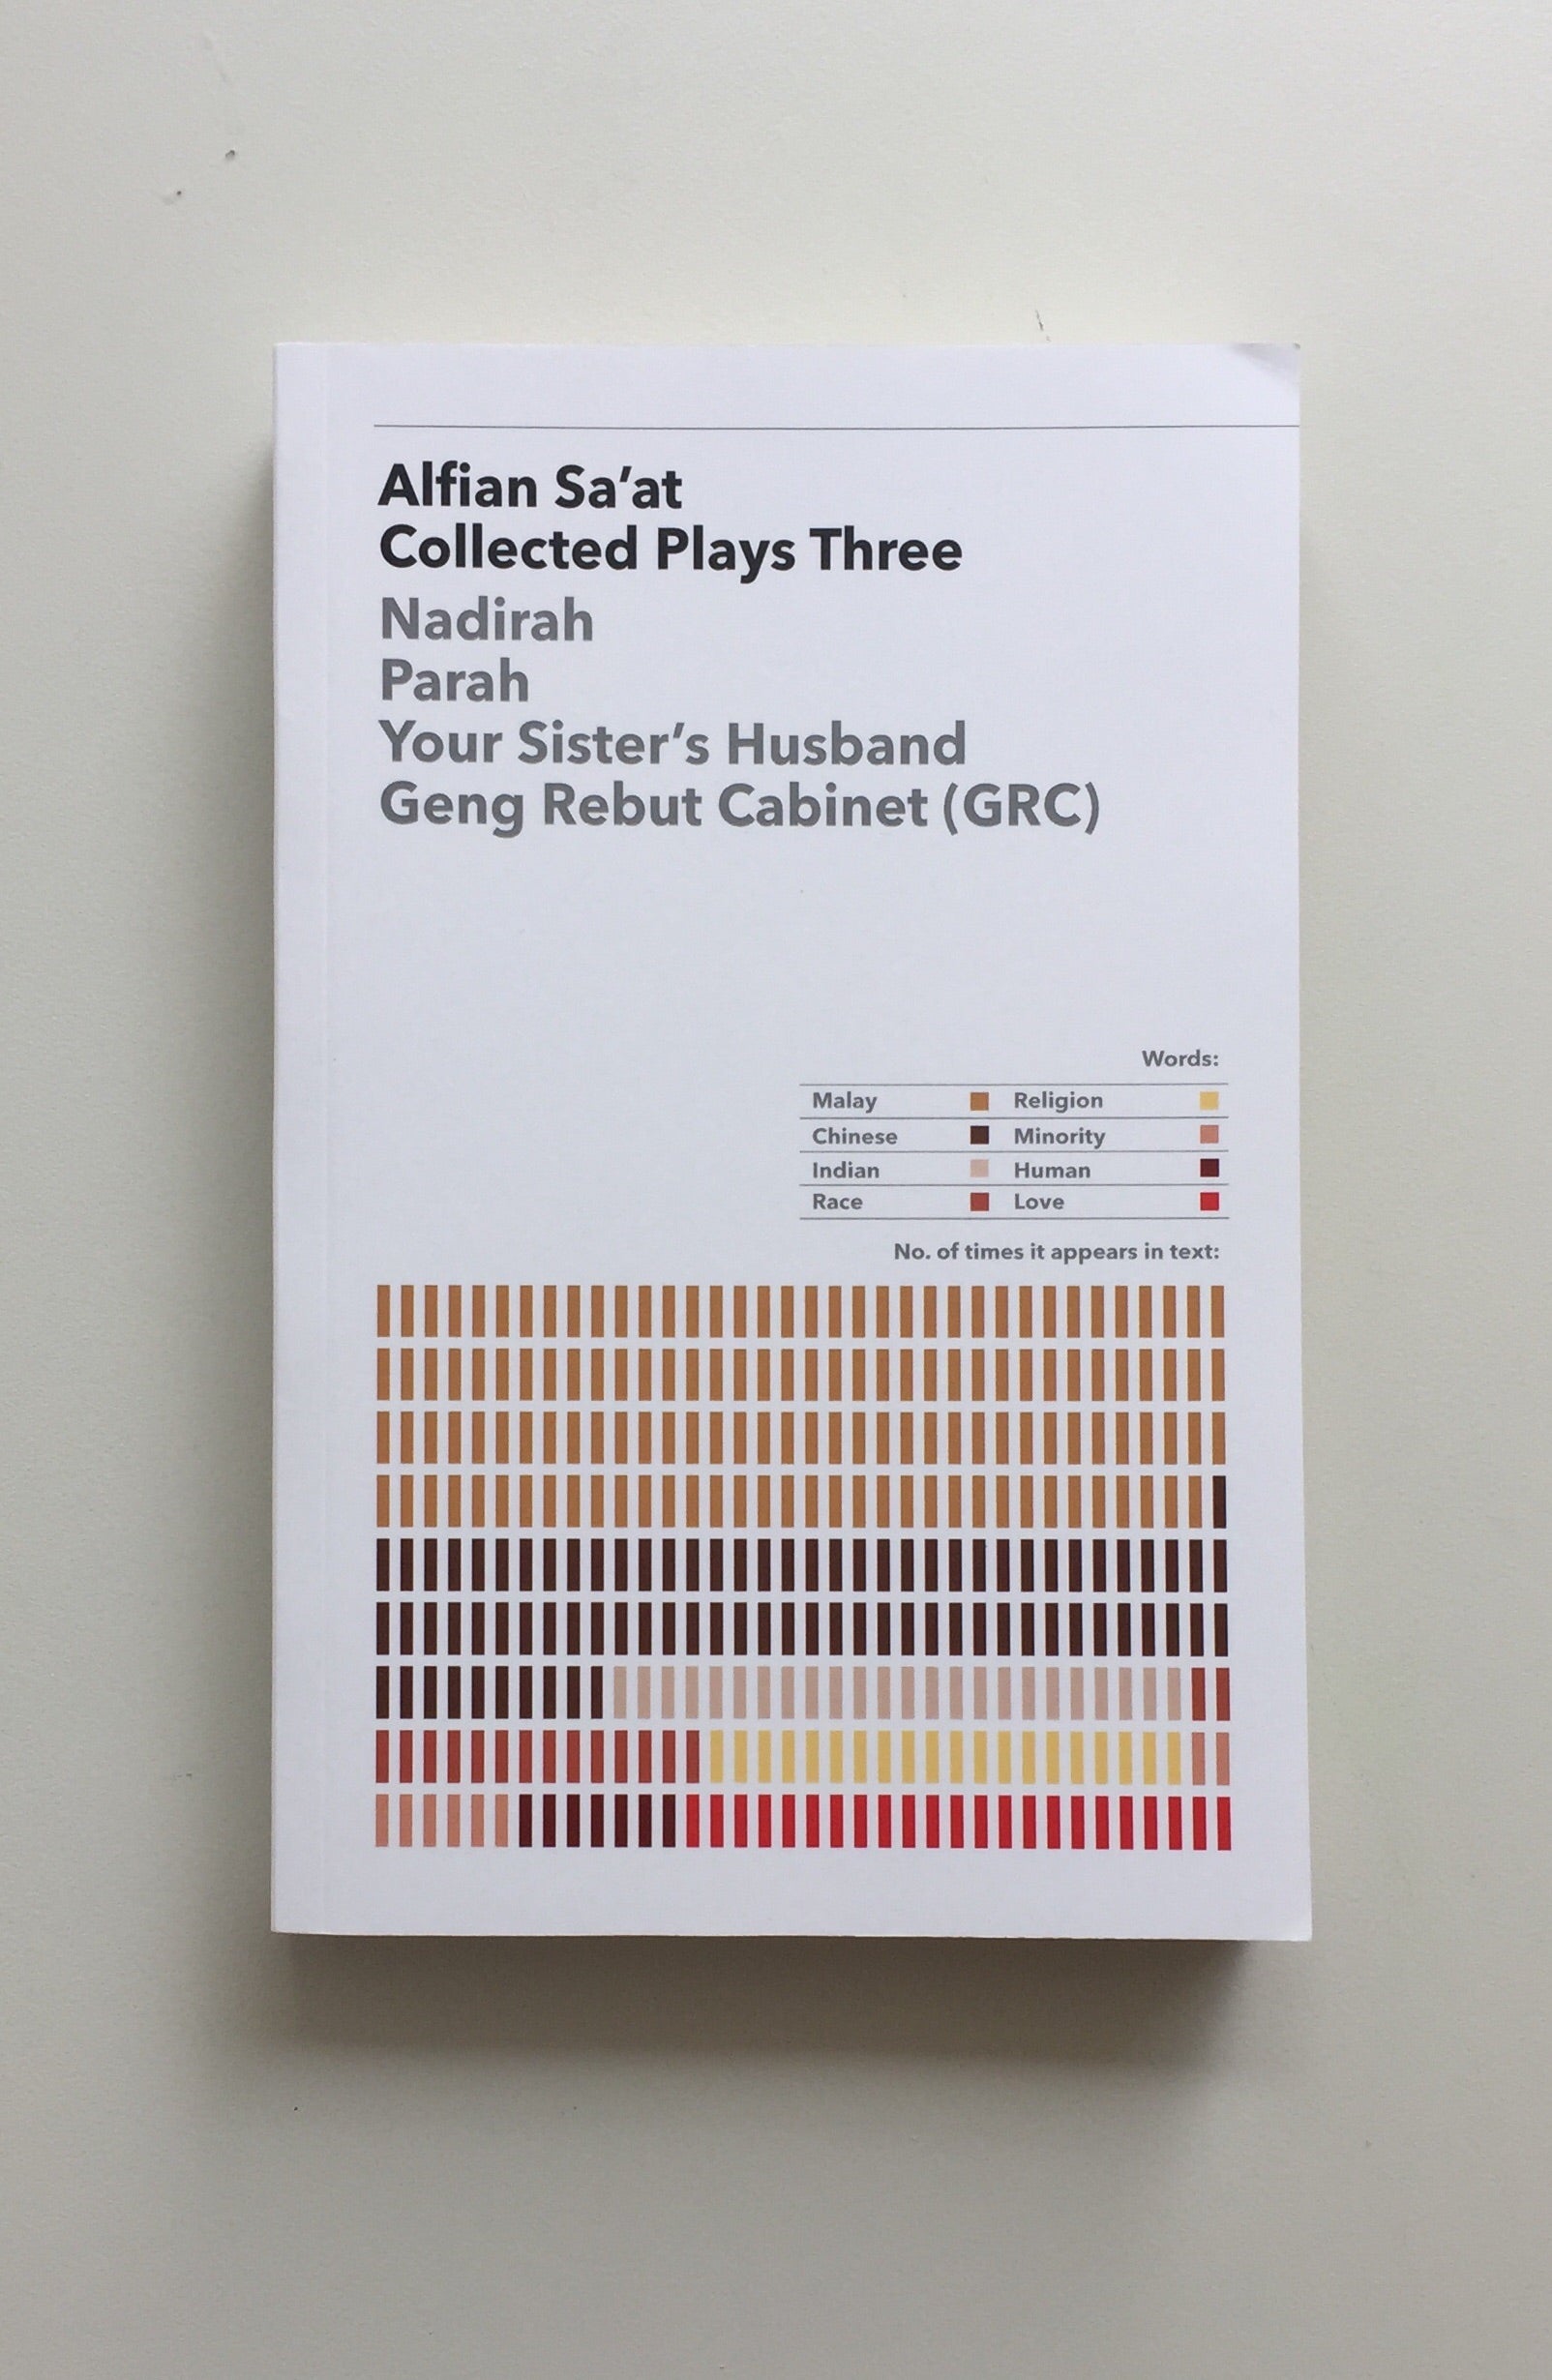 Collected Plays Three by Alfian Sa'at